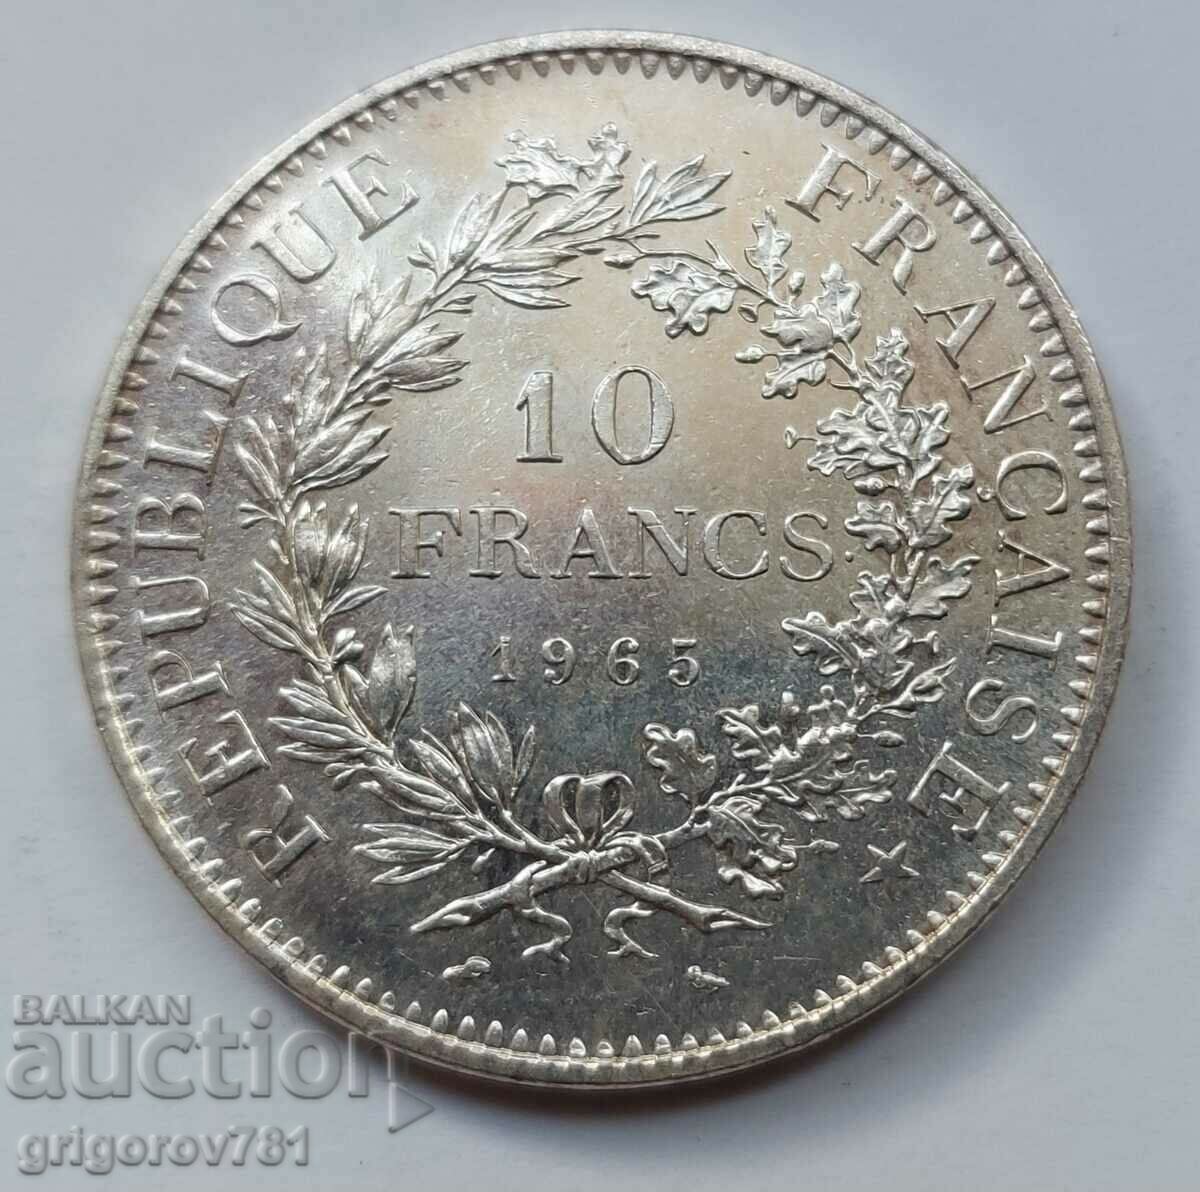 10 Franci Argint Franta 1965 - Moneda de argint #34